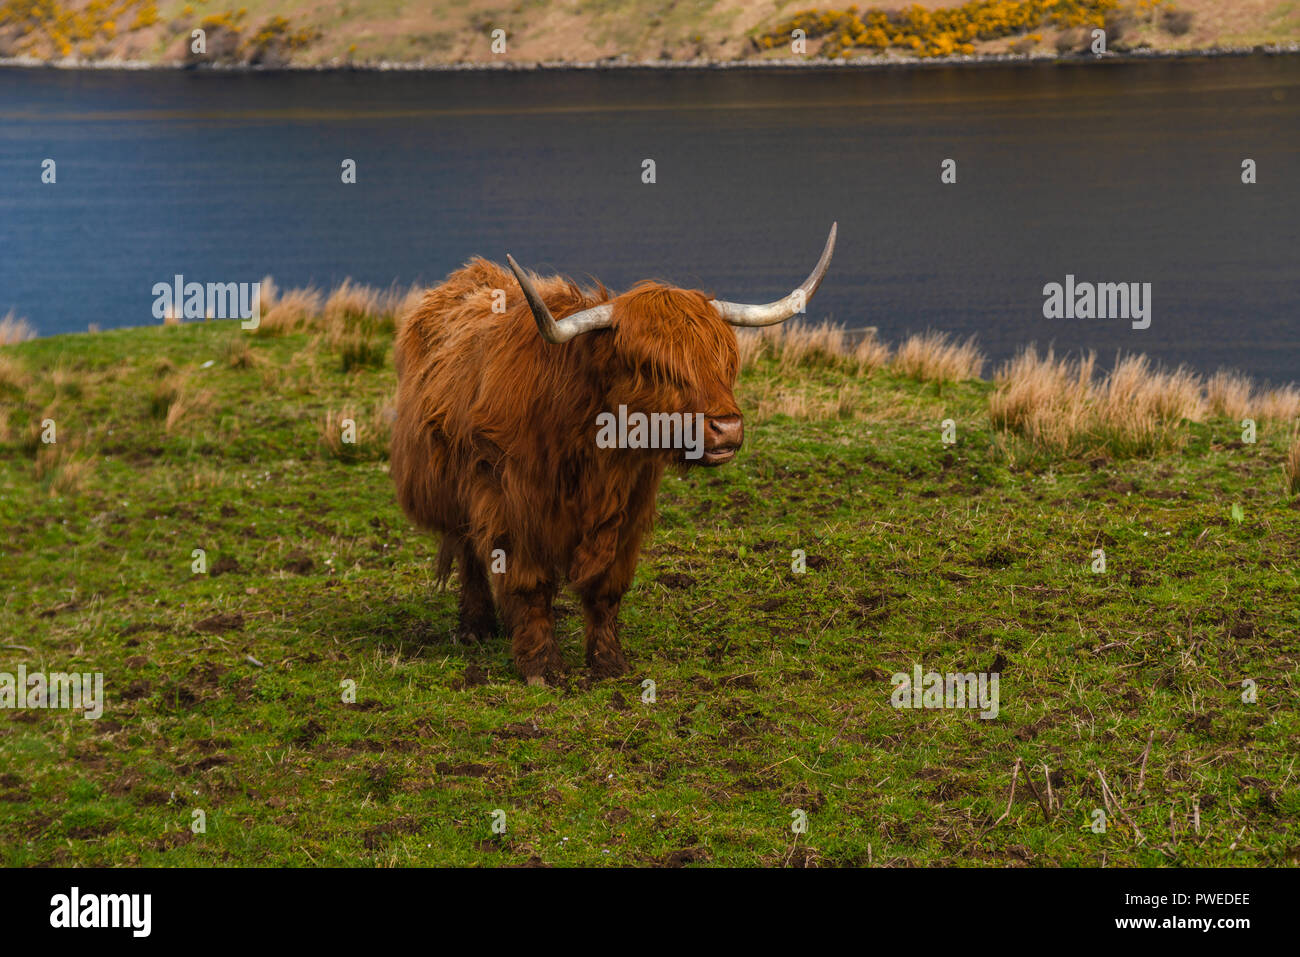 Rouge Brun, Highland cow restant dans un pré, Isle of Skye, Scotland, UK Banque D'Images